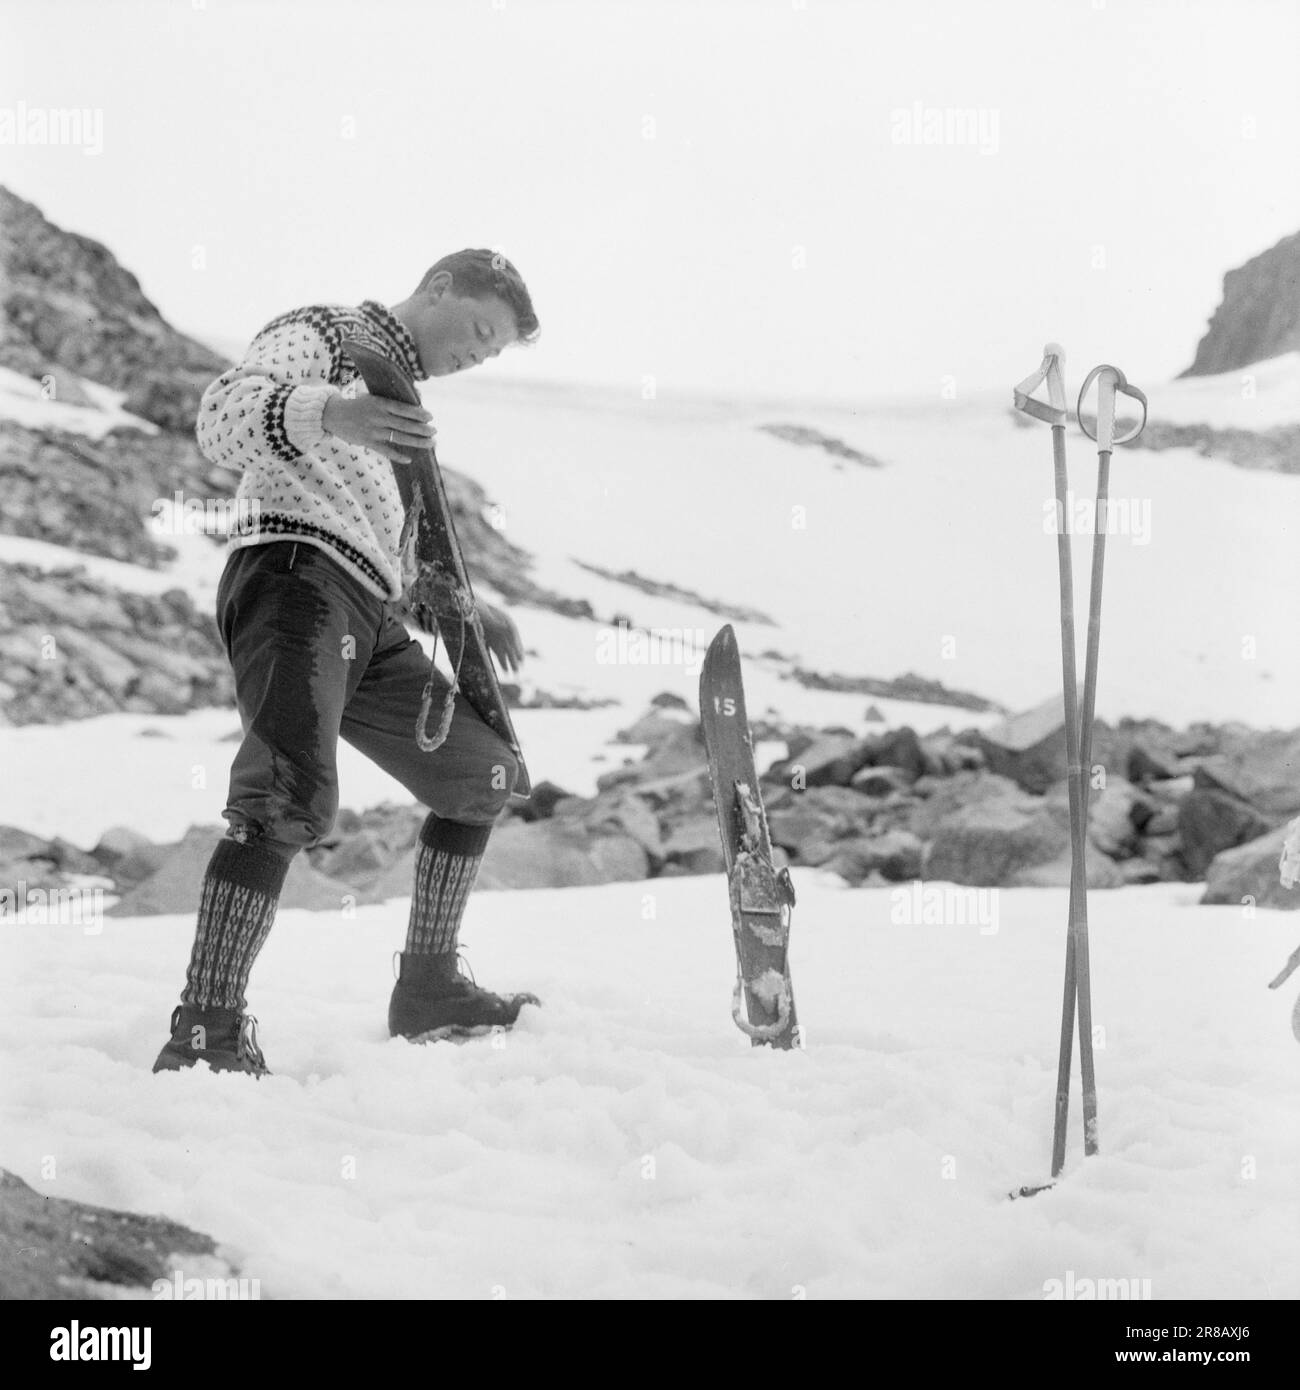 Aktuell 31-4-1960: Breite Skier über den Gletscher unter der Zunge des schwer gerissenen Svellnosbreen gibt es einen Skistall mit weniger als einem Meter langen Skiern. Aber wenn sie klein sind, sind sie im Gegenzug breit wie Schneeschuhe. Es hat keinen Sinn, sie zu verfolgen, solange man es bewältigen kann. Die Skier müssen für den Sommereinsatz geschmiert werden. Der Spezialist Kjell Fjeld hat eine gute Schicht Klebstoff untergelegt und jetzt glättet er liebevoll die Skier. Foto: Ivar Aaserud / Aktuell / NTB ***FOTO NICHT ABGEBILDET*** Stockfoto